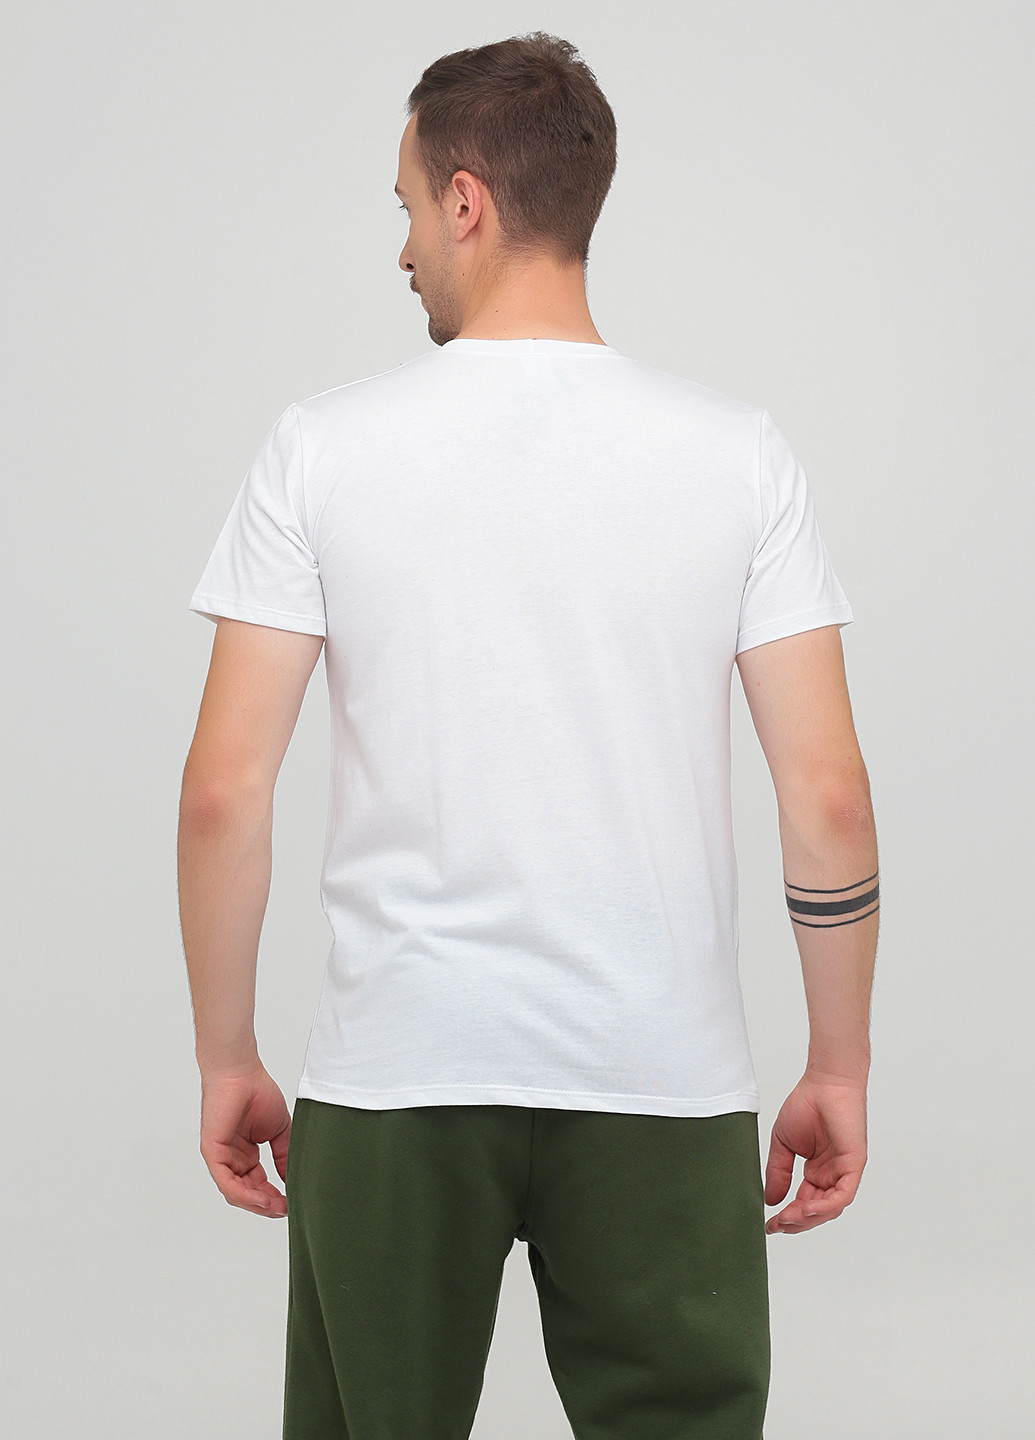 Белая футболка Трикомир